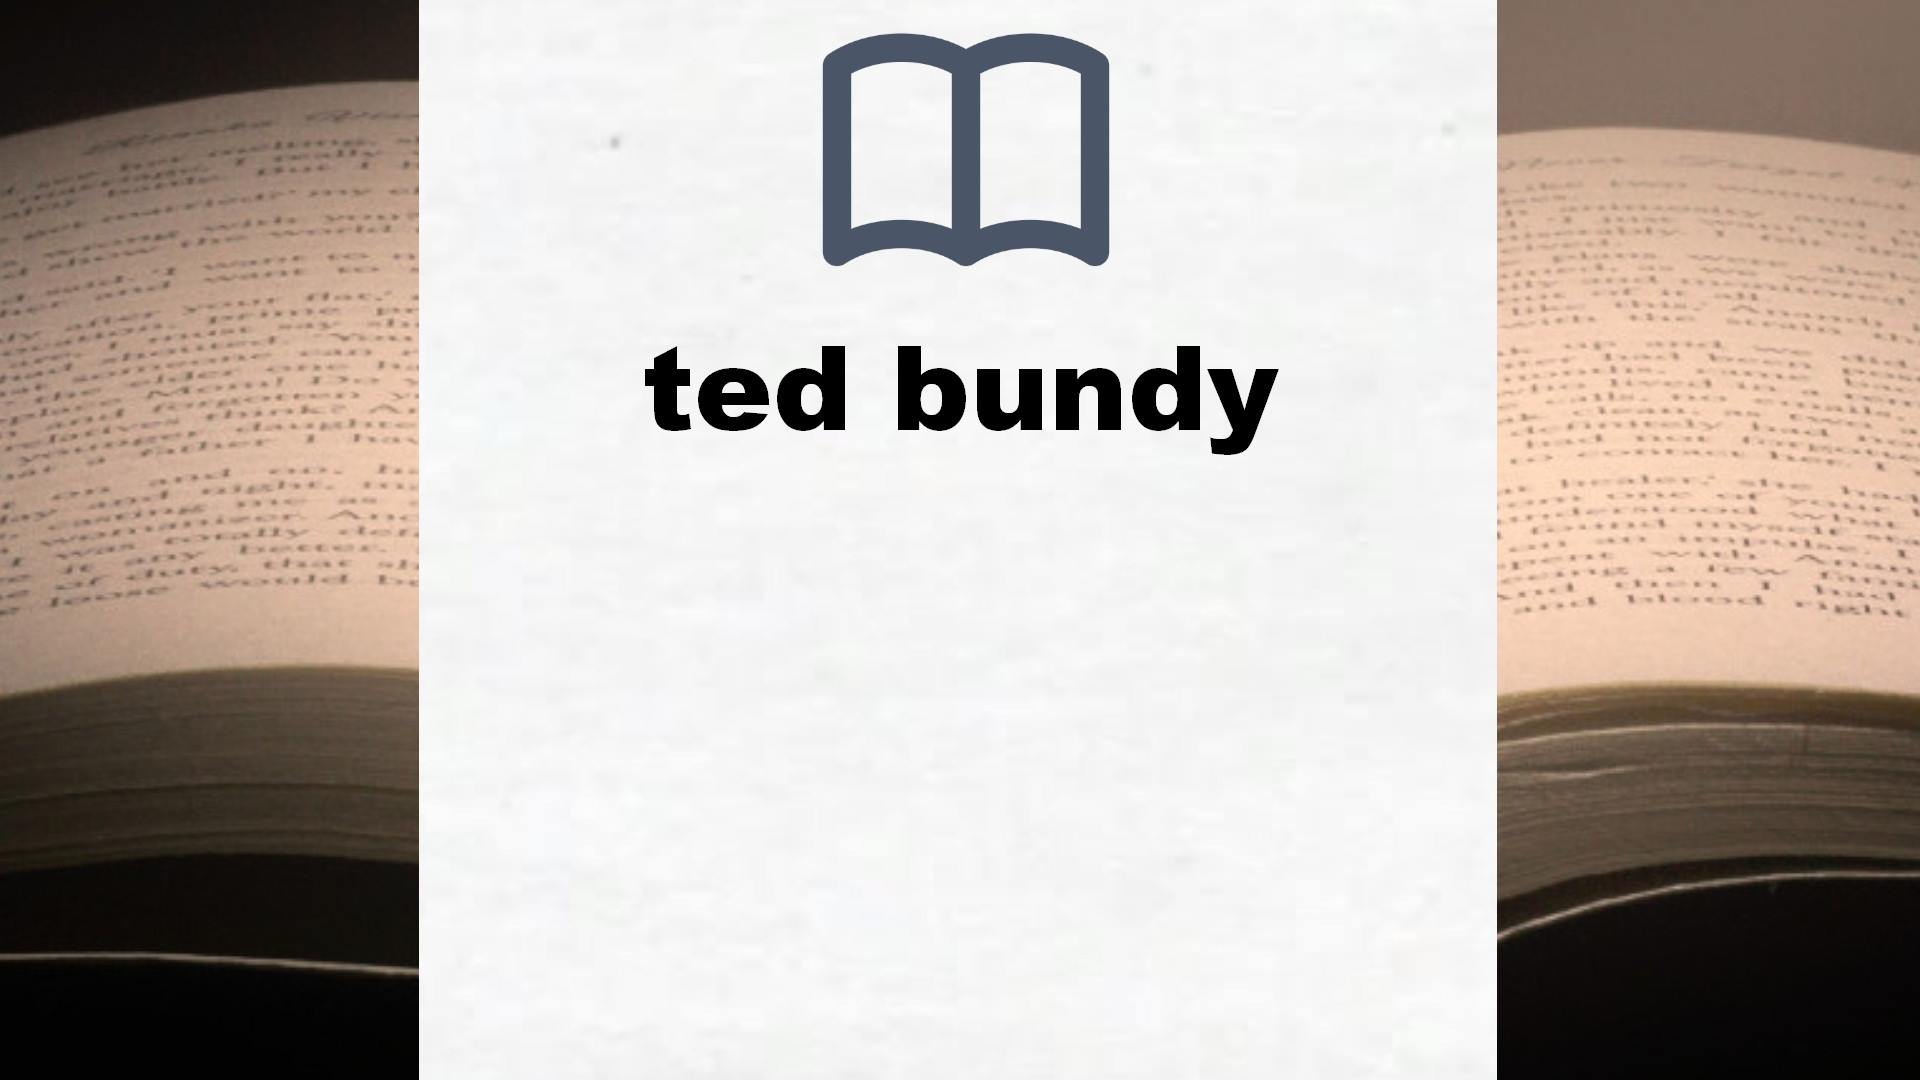 Libros sobre ted bundy